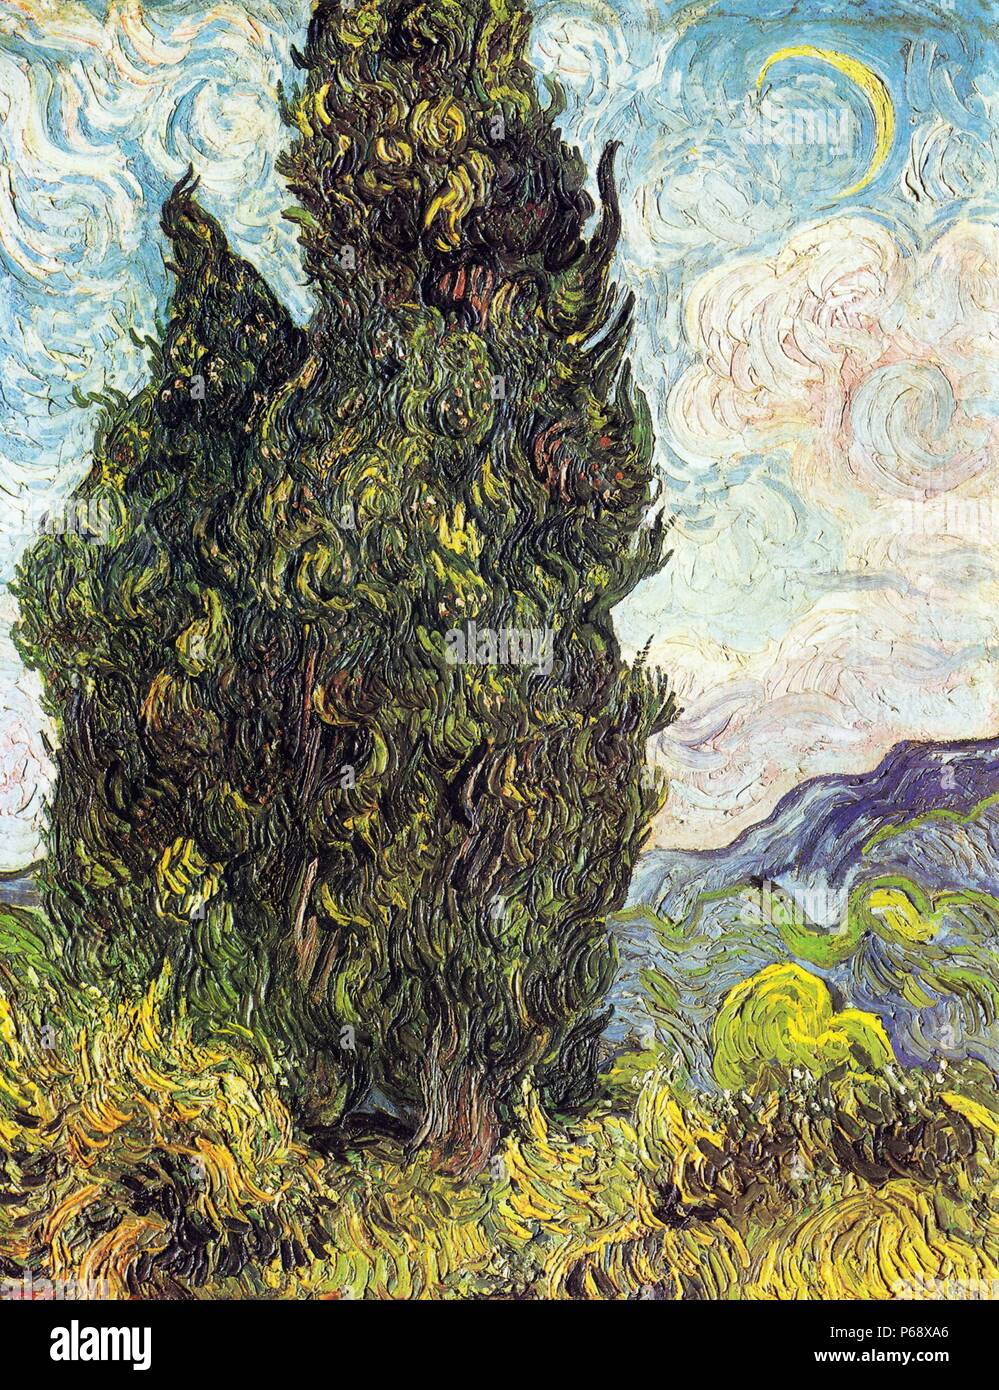 Zypressen von Vincent Van Gogh (1853-1890) ein post-impressionistischen Maler niederländischer Herkunft. Datiert 1889. Stockfoto